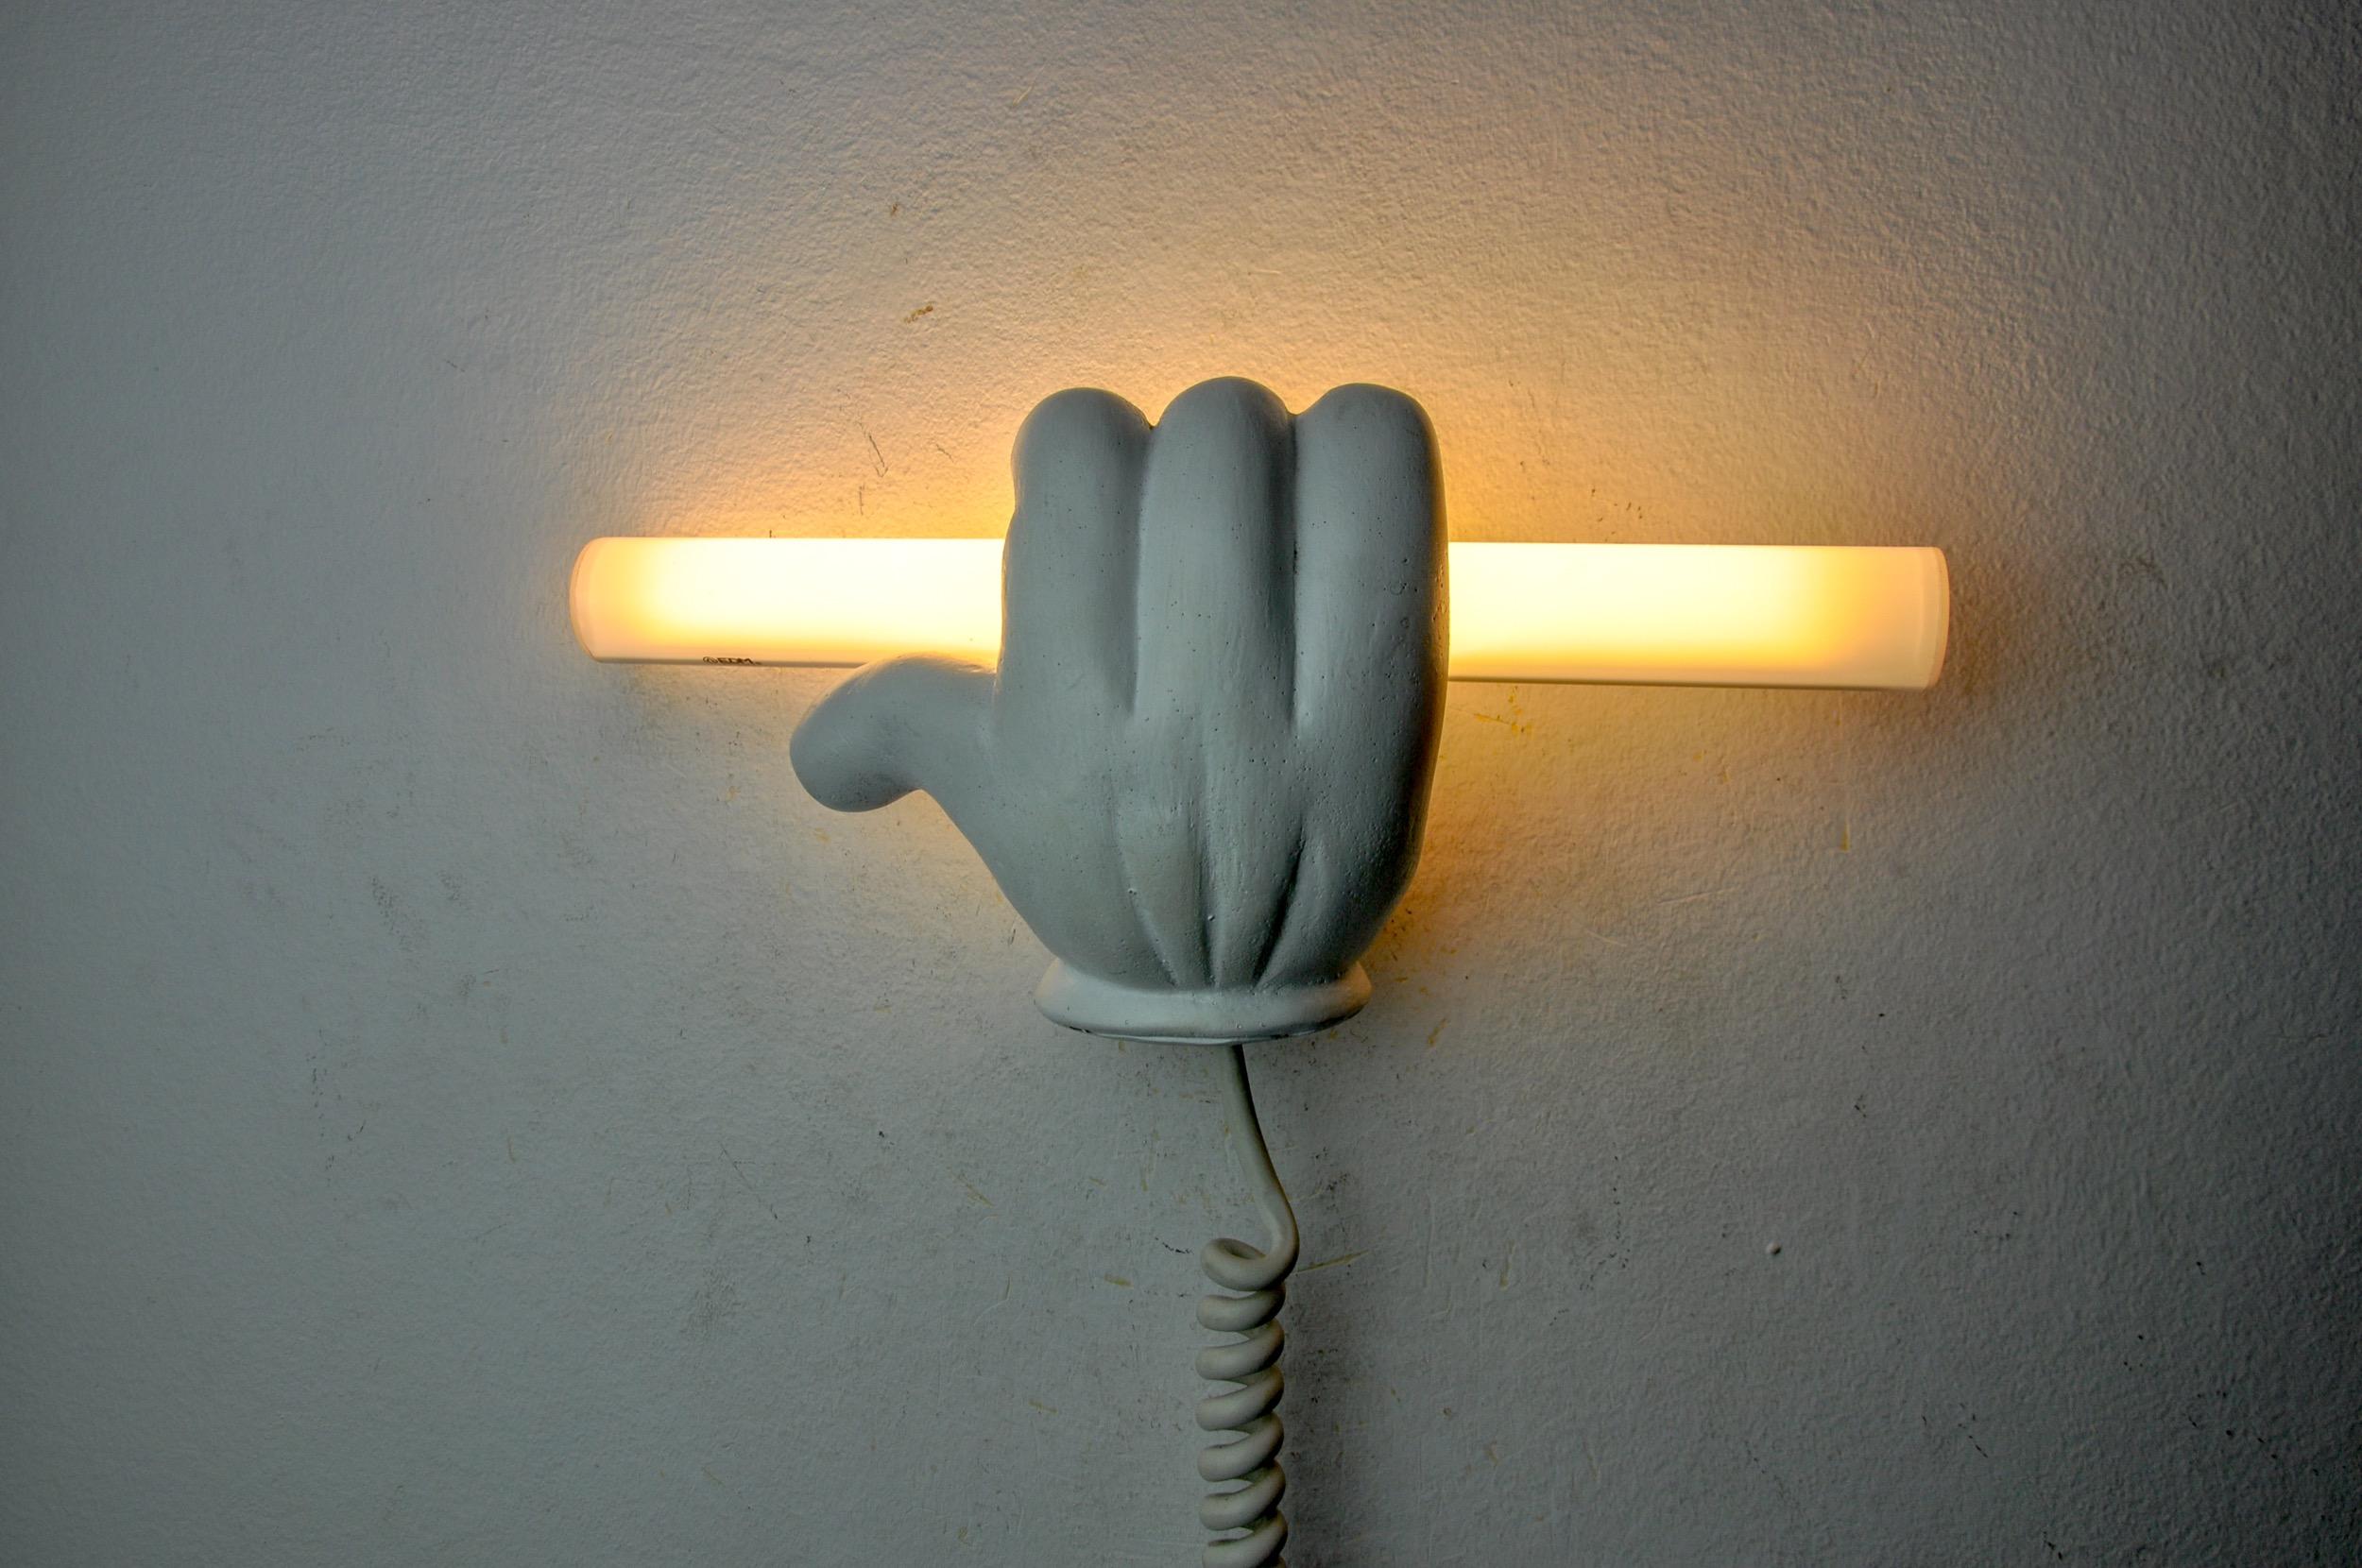 Hervorragende und seltene Wandlampe, die die Hand von Mickey Mouse darstellt, entworfen und hergestellt in Frankreich in den 1970er Jahren. Designobjekt aus Gips, einfach zu installieren. Ein seltenes Stück, das Ihrem Interieur einen echten